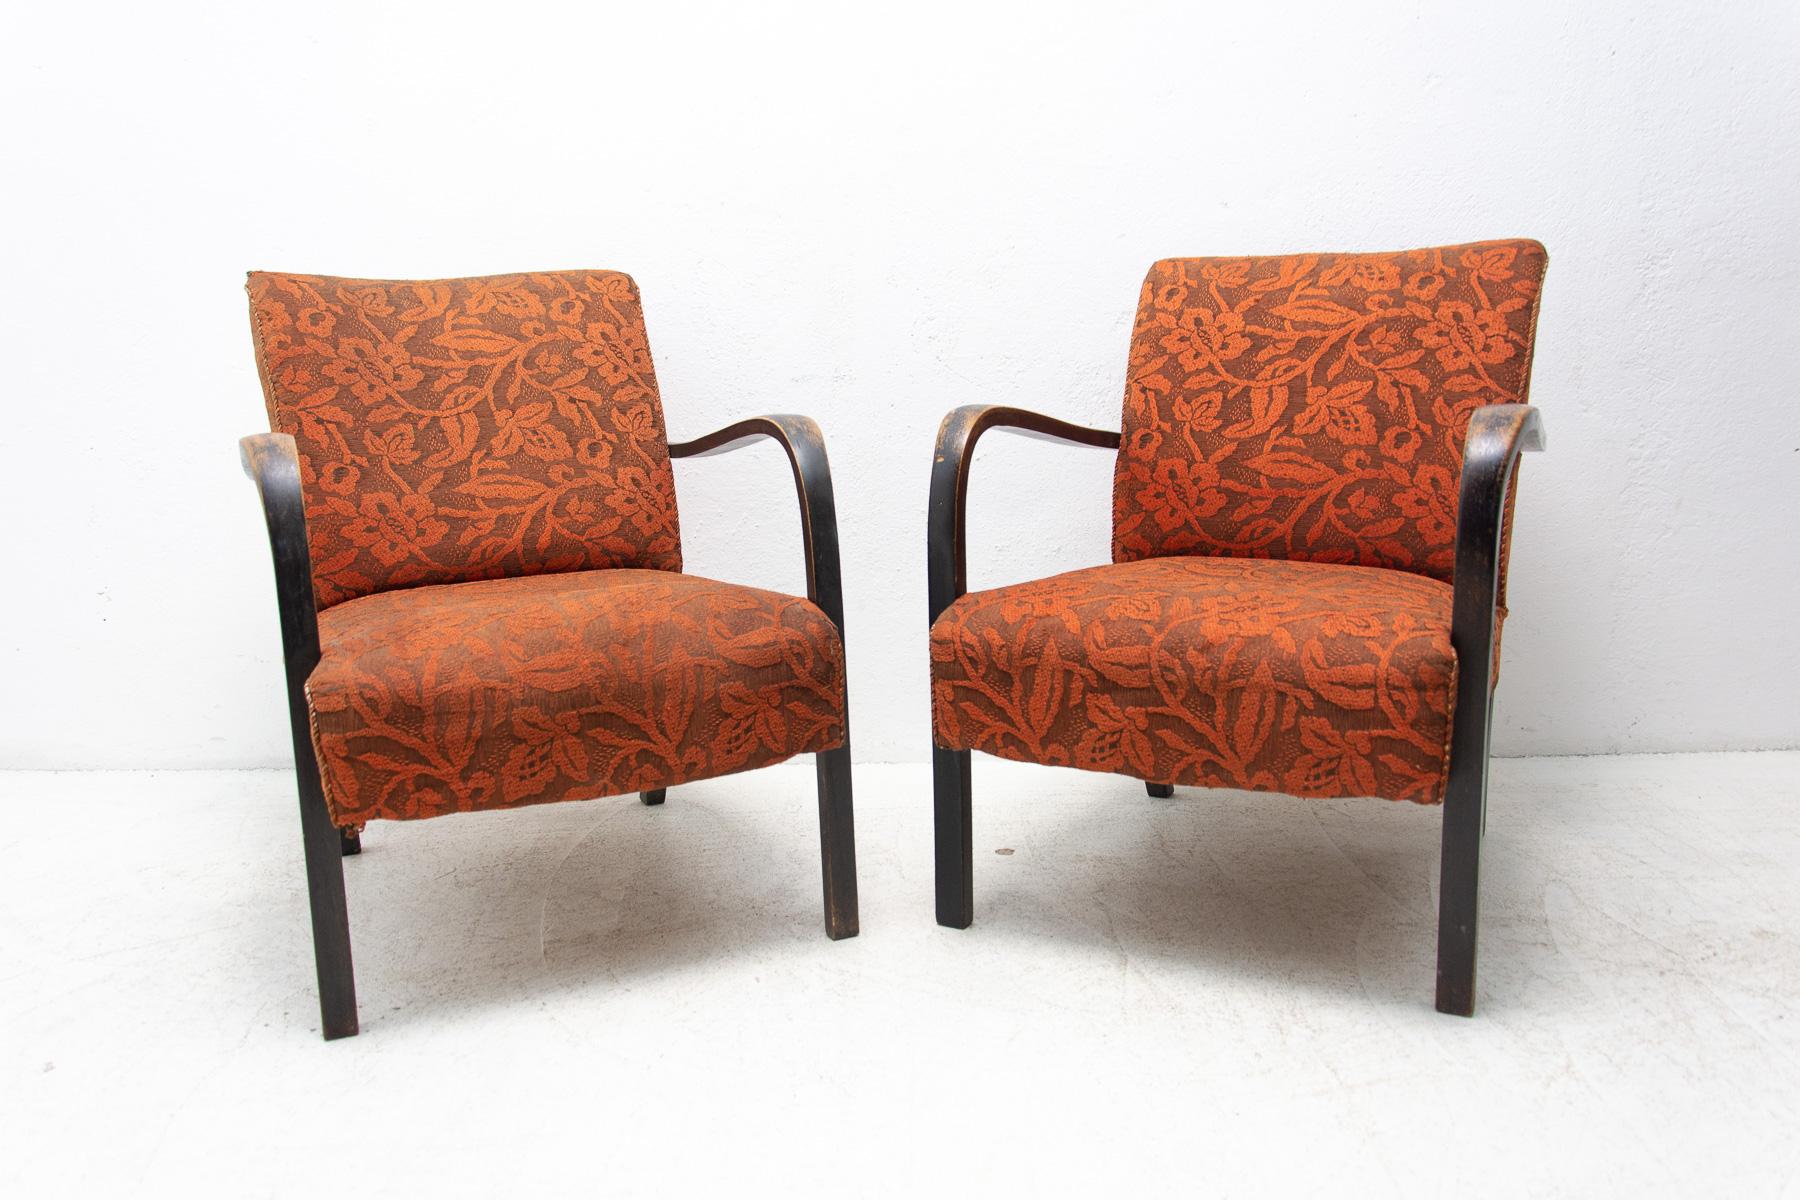 Diese Art-Deco-Sessel (Katalognummer B974) wurden in den 1930er Jahren von Thonet in der damaligen Tschechoslowakei hergestellt.

Hergestellt aus gebogenem Buchenholz und Polsterung.

Sie sind in gutem Vintage-Zustand, weisen Alters- und